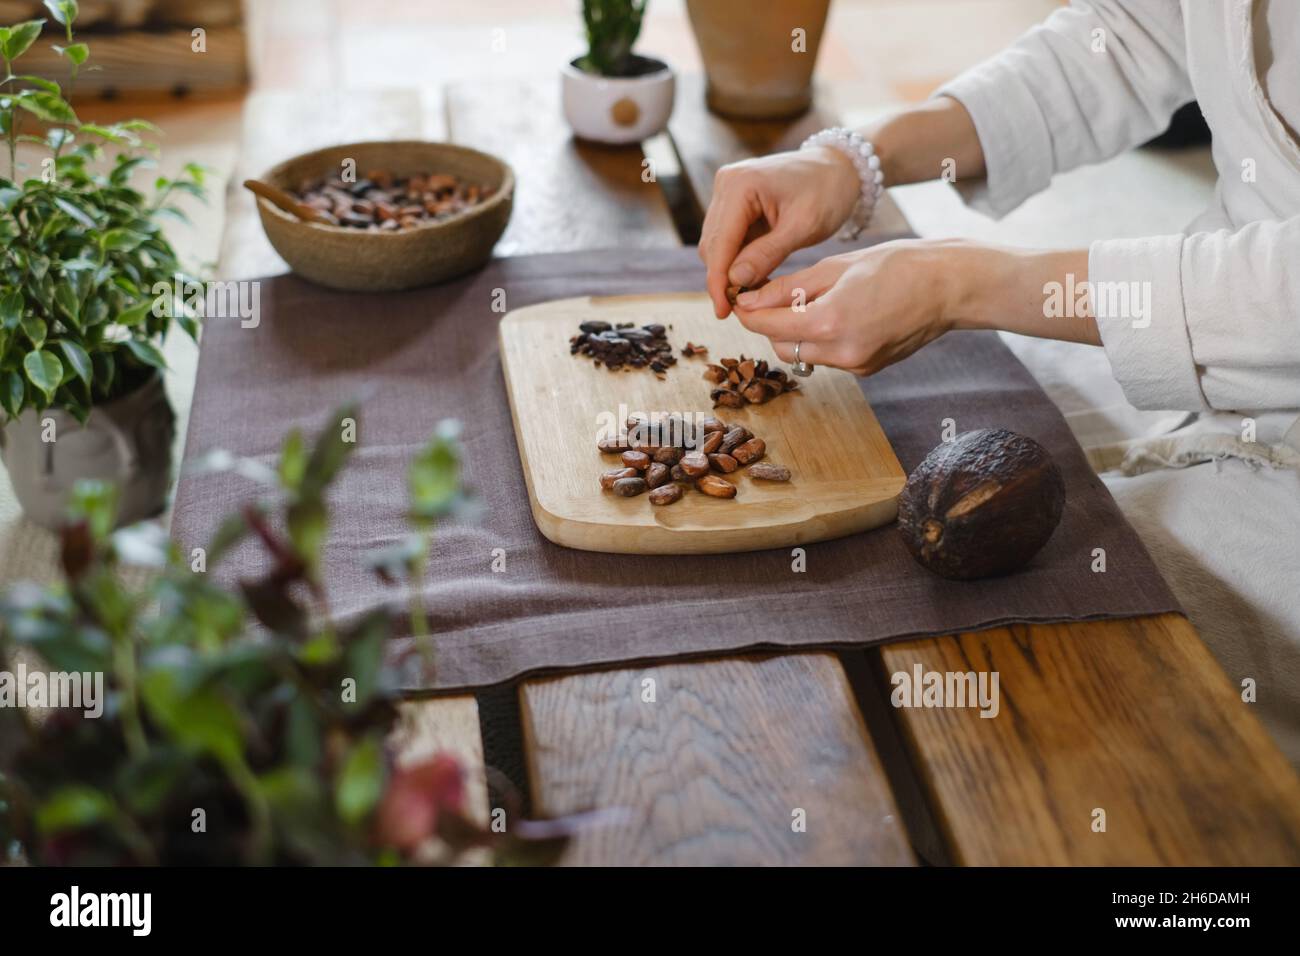 Les mains épluchant des haricots cacao bio sur une table en bois, des pointes de cacao, la fabrication artisanale de chocolat dans un style rustique pour la cérémonie sur la table.Dégustation Banque D'Images